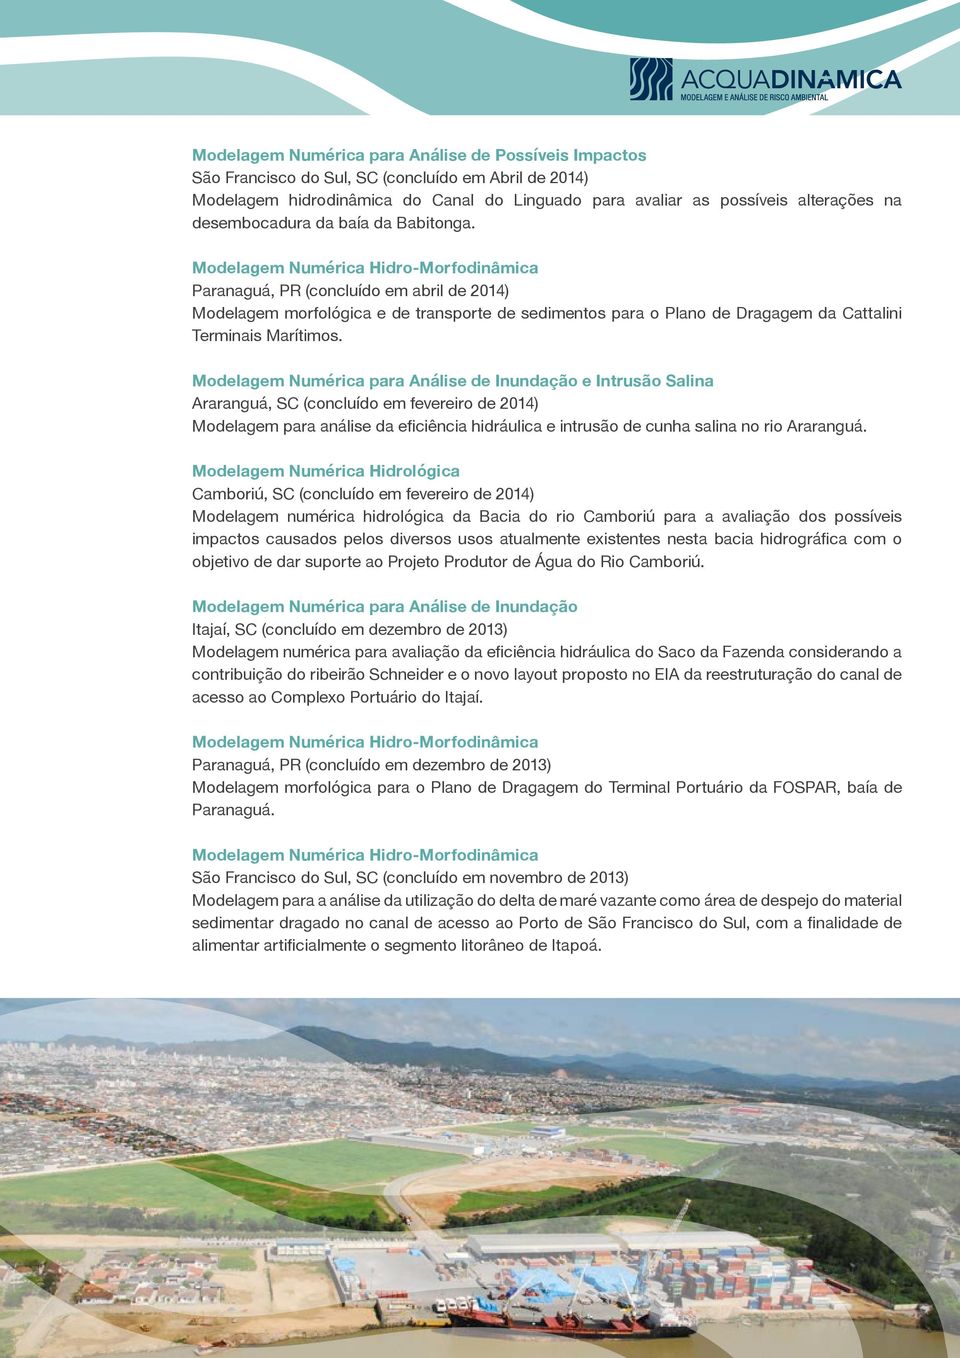 Modelagem Numérica para Análise de Inundação e Intrusão Salina Araranguá, SC (concluído em fevereiro de 2014) Modelagem para análise da eficiência hidráulica e intrusão de cunha salina no rio